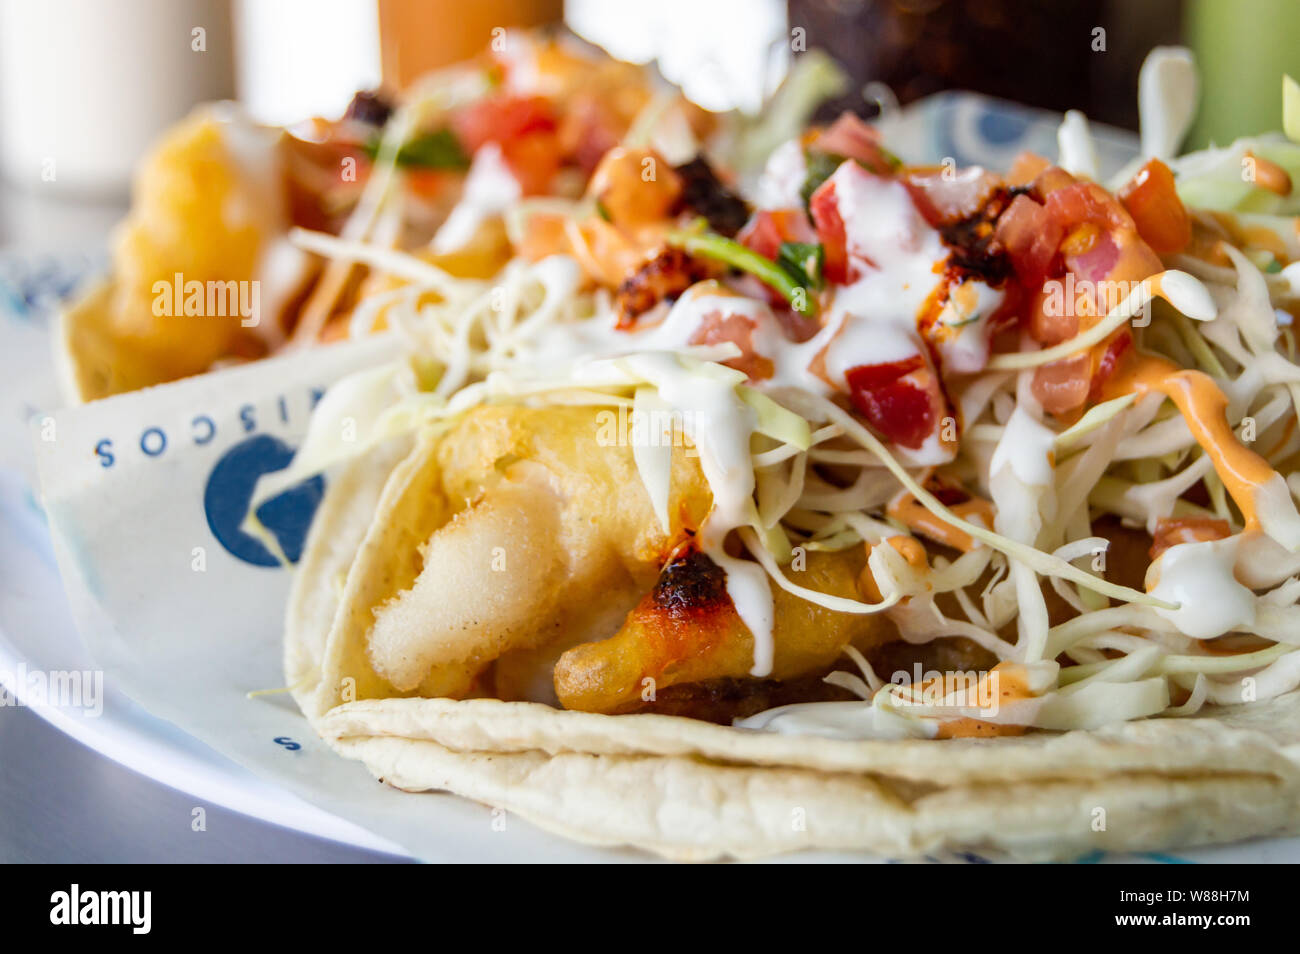 Tacos de poissons et de crevettes, de fruits de mer style Baja California tacos servi avec choux,tomates,la coriandre et une variété de salsas Banque D'Images